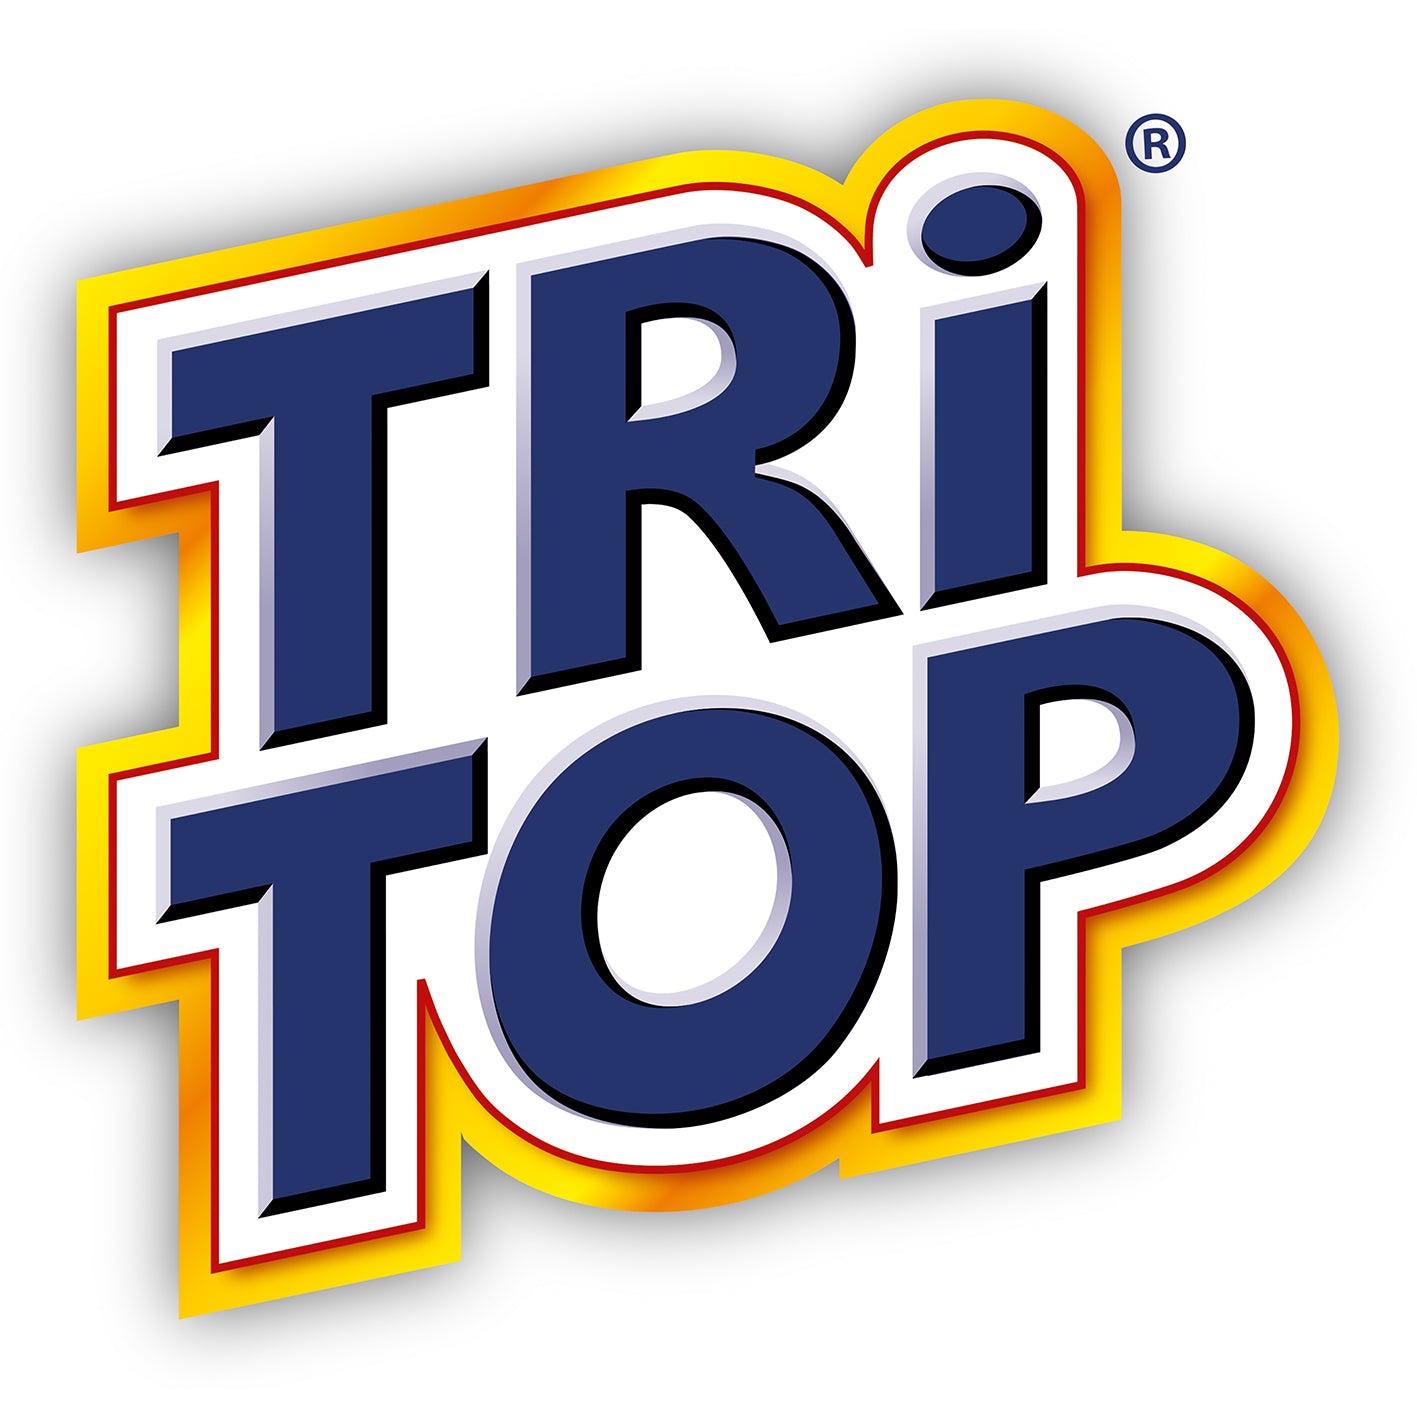 TRi TOP Sirup Beeren-Mix - 600 ml